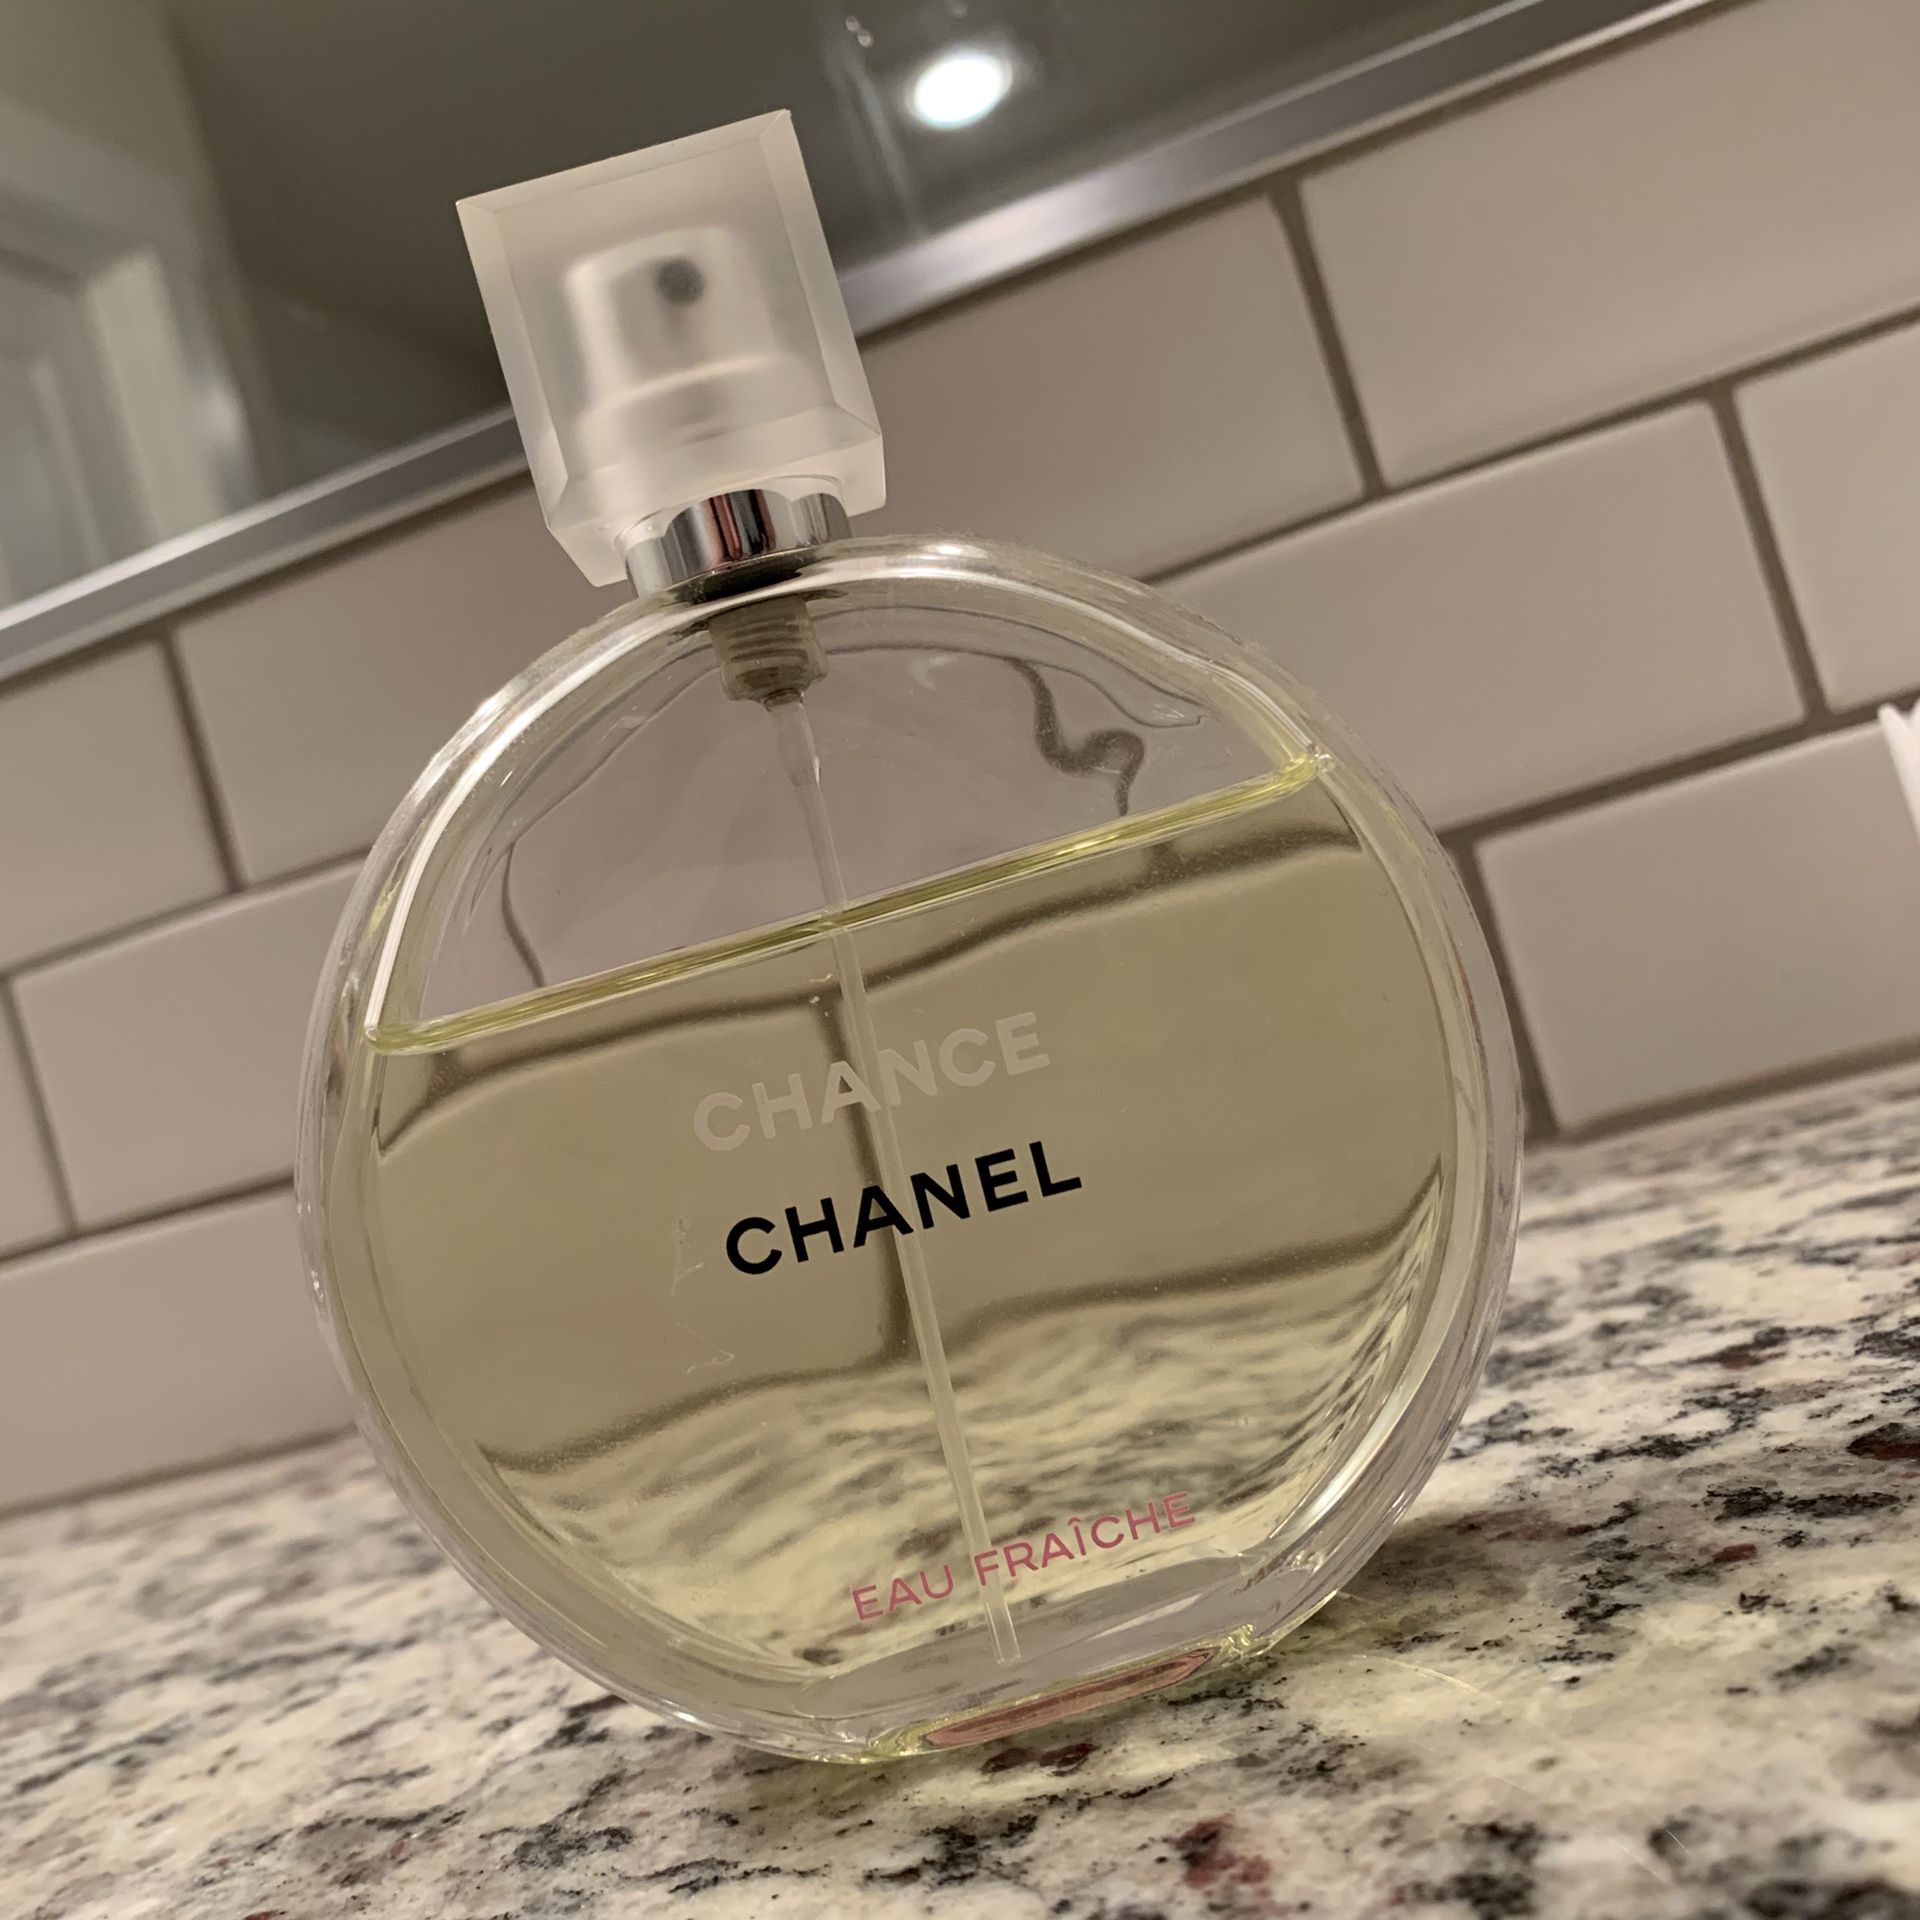 Chanel Chance Eau Fraiche perfume